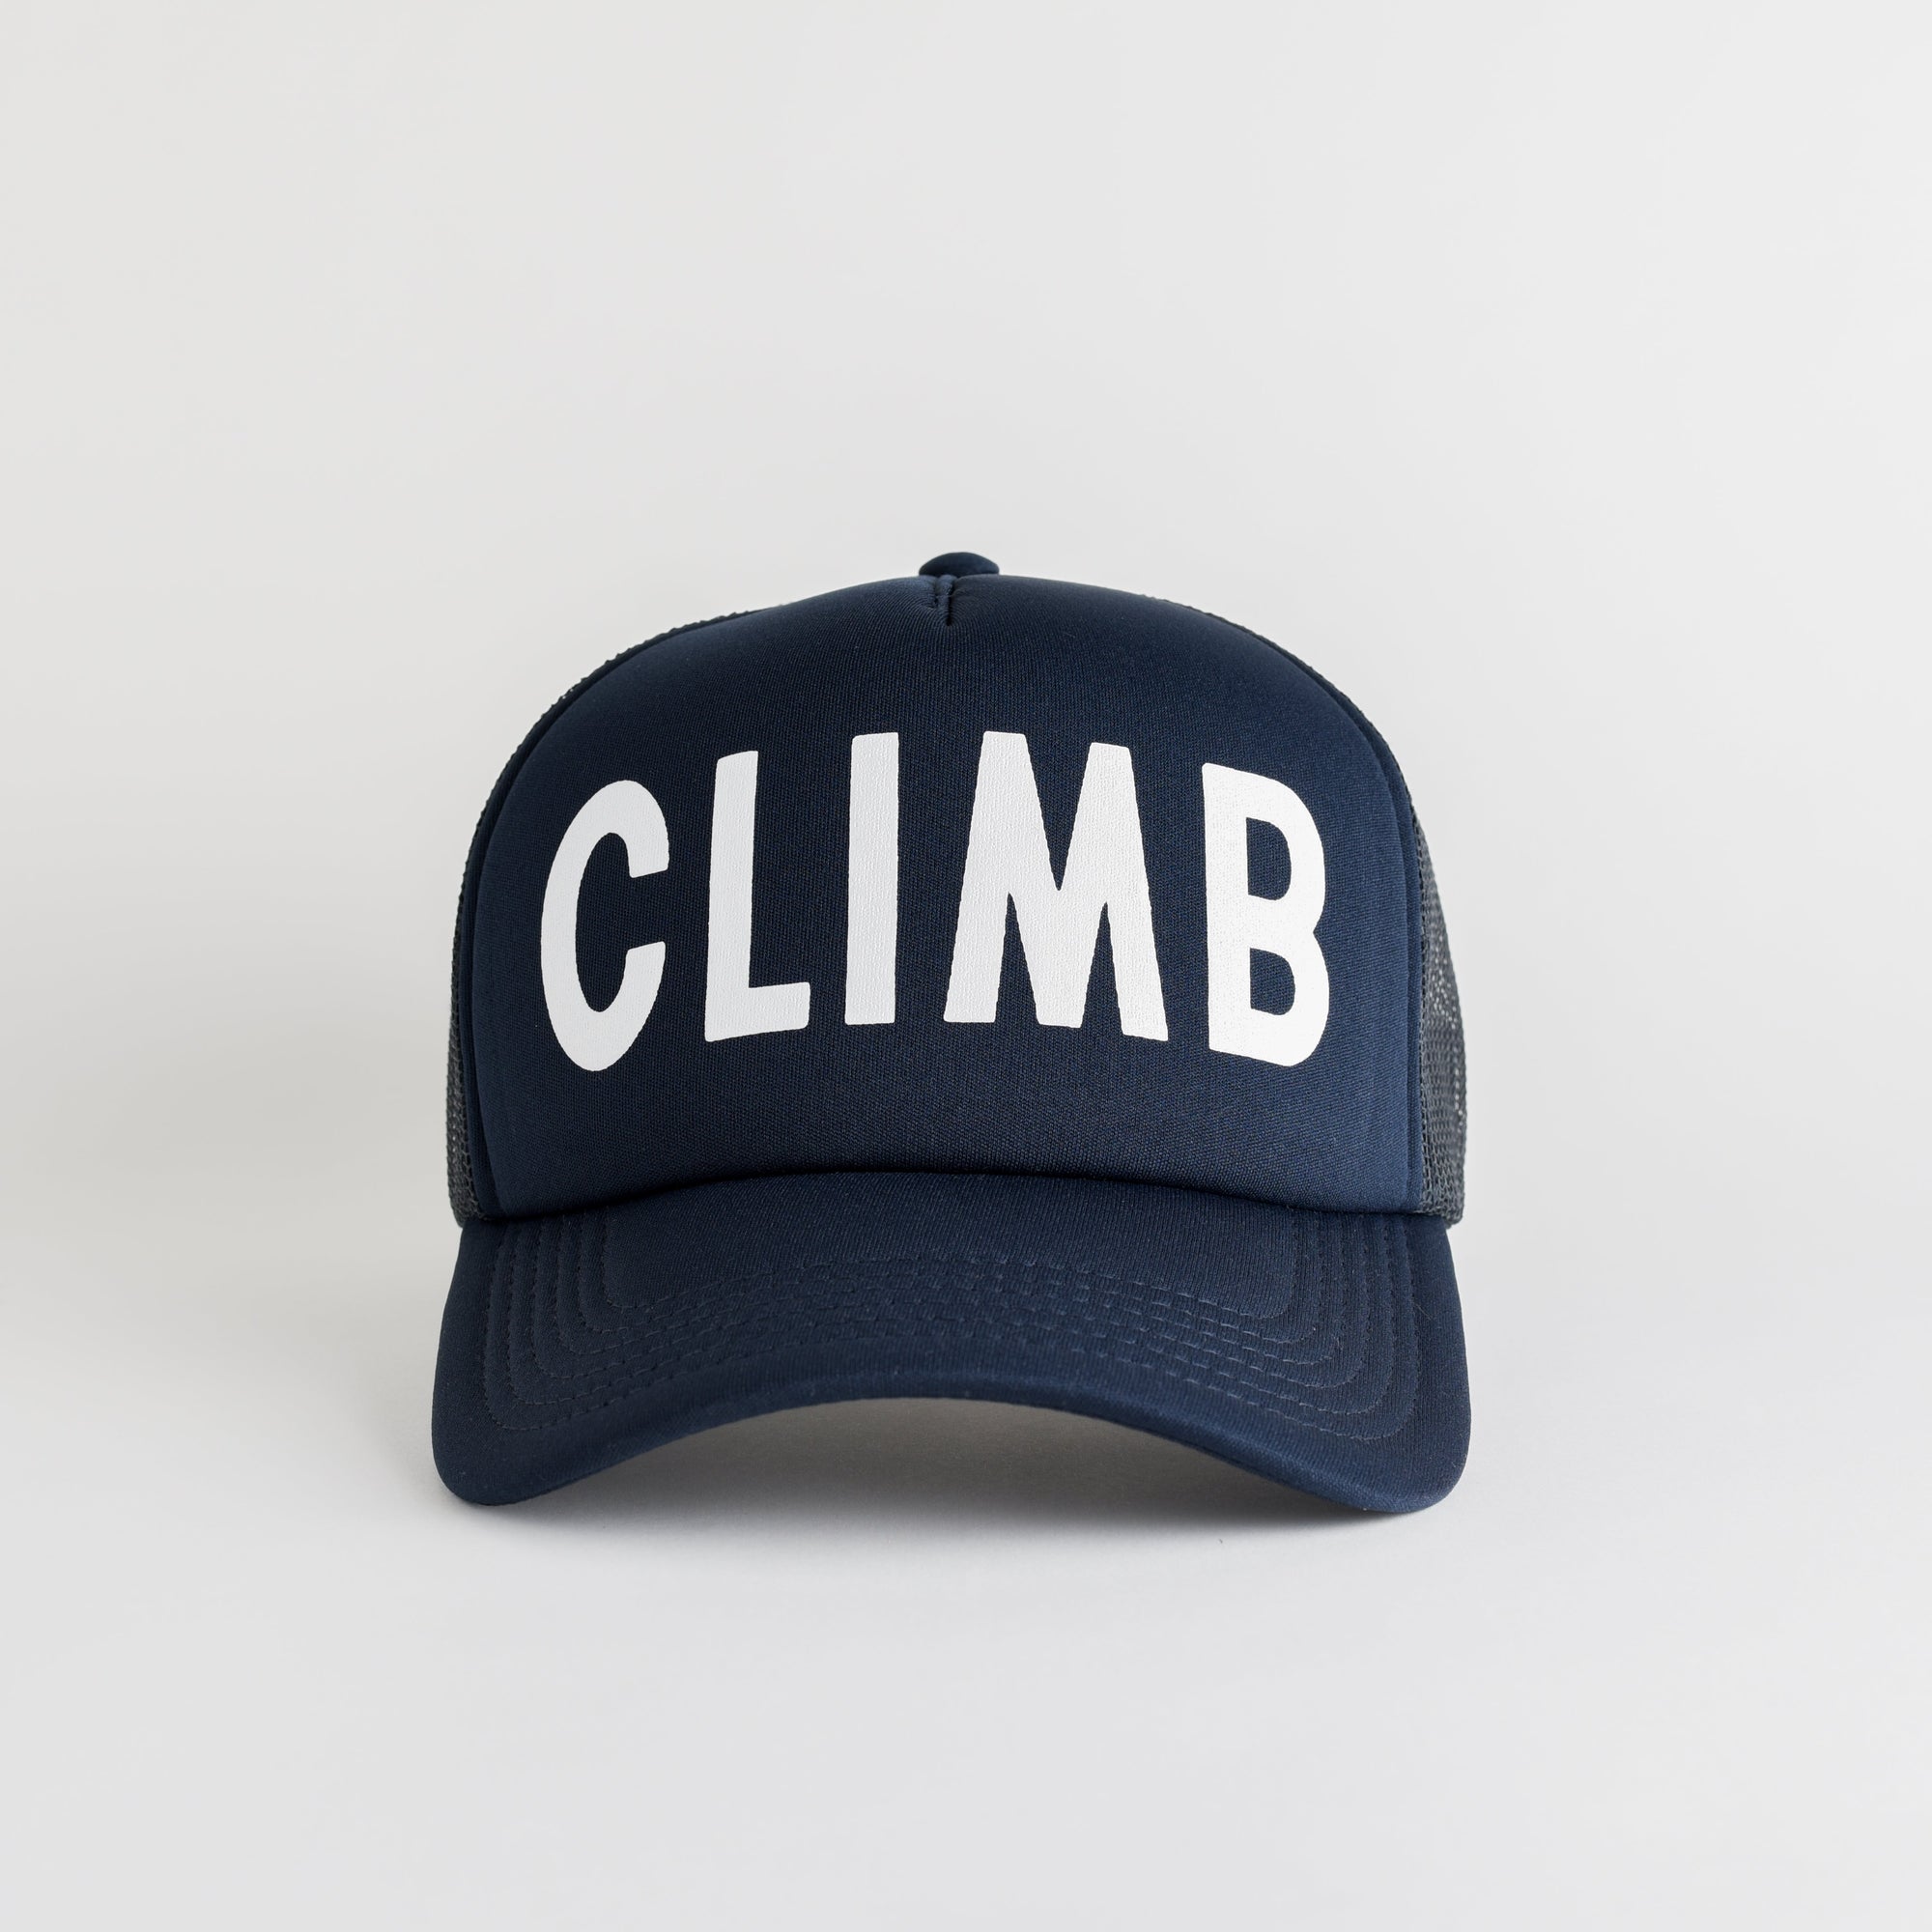 Climb Recycled Trucker Hat - navy